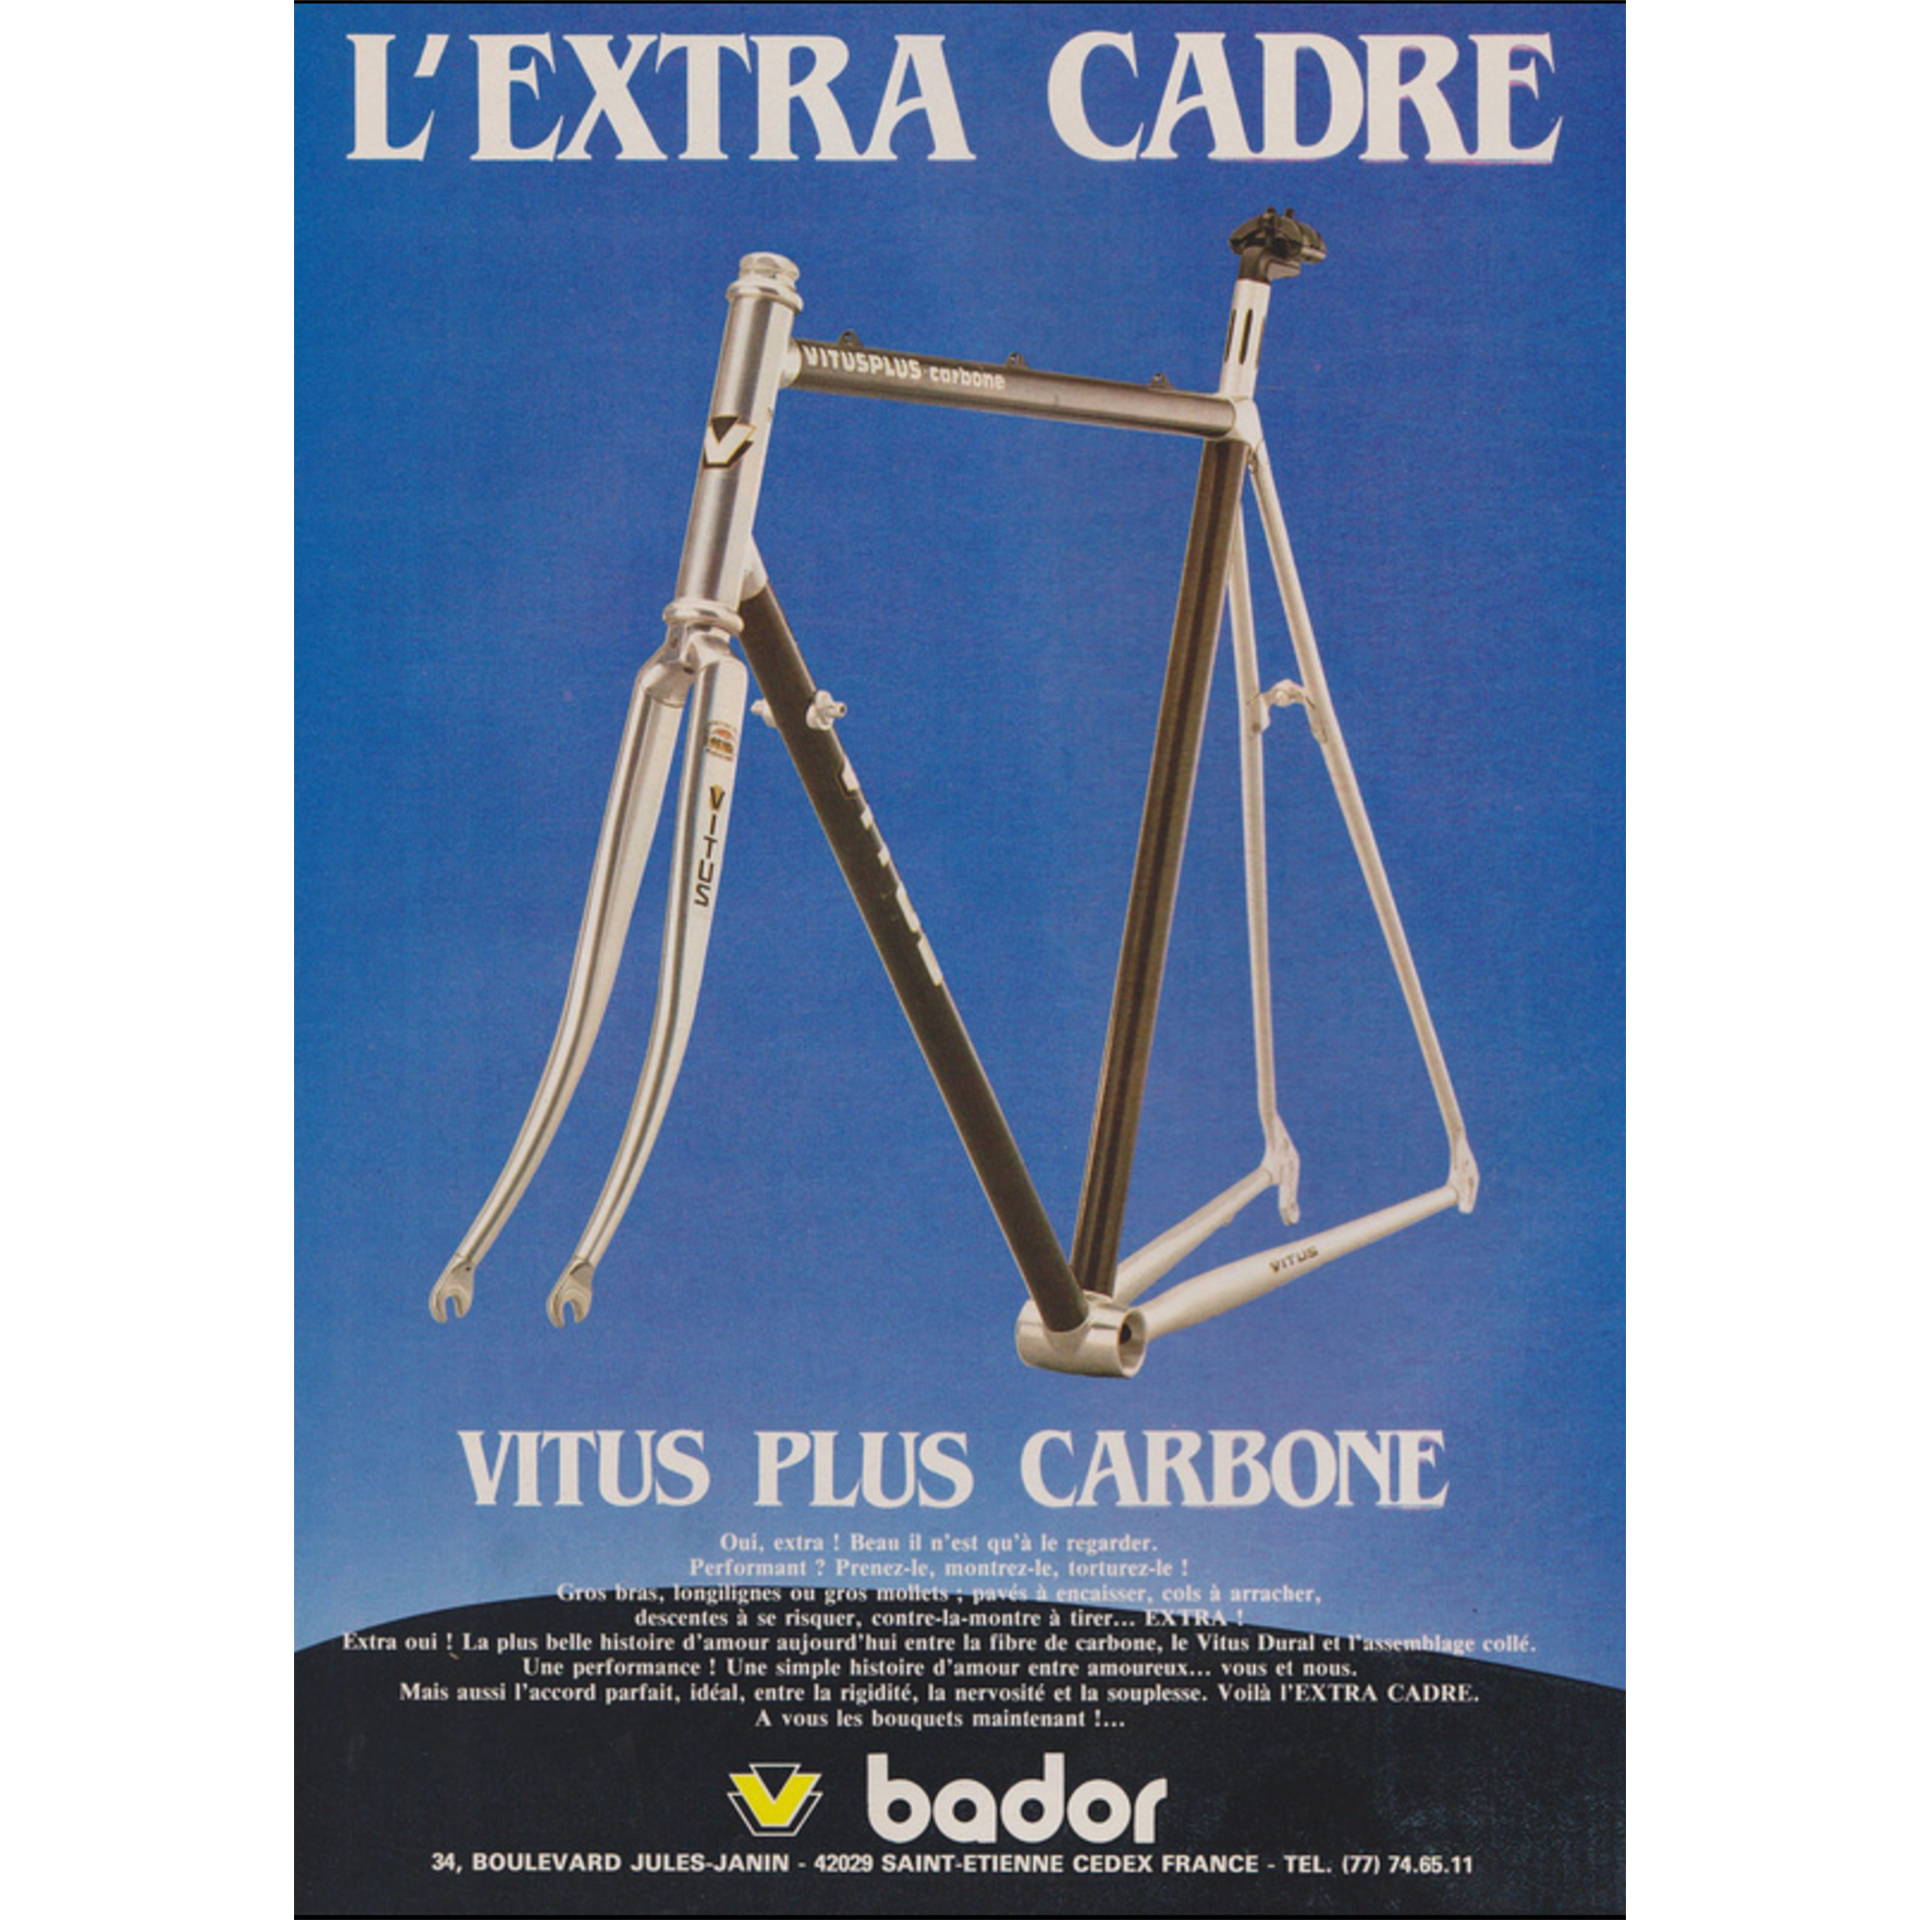 Vitus Plus Carbone print ad